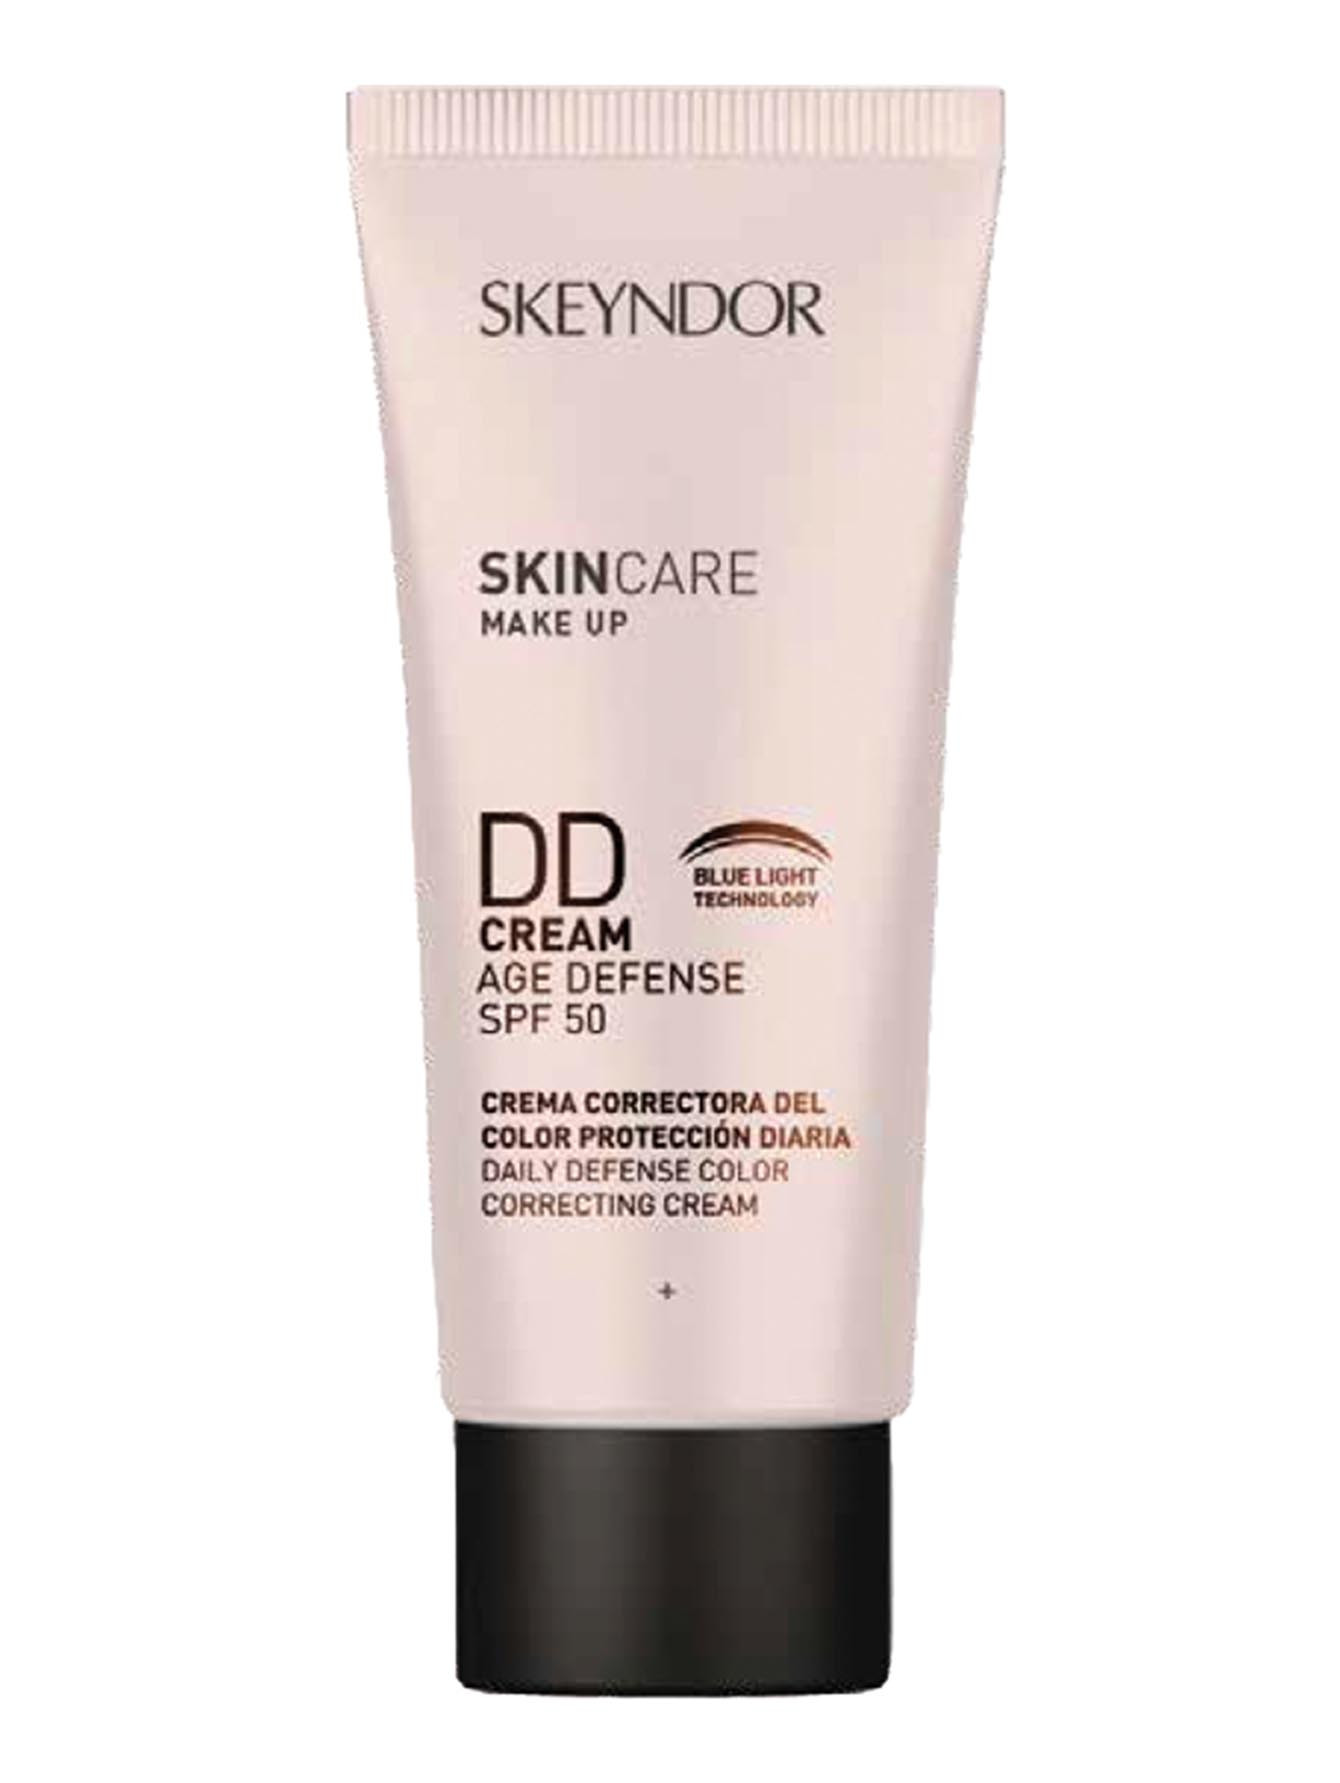 DD-крем для лица Skincare Makeup, SPF 50, 40 мл - Общий вид